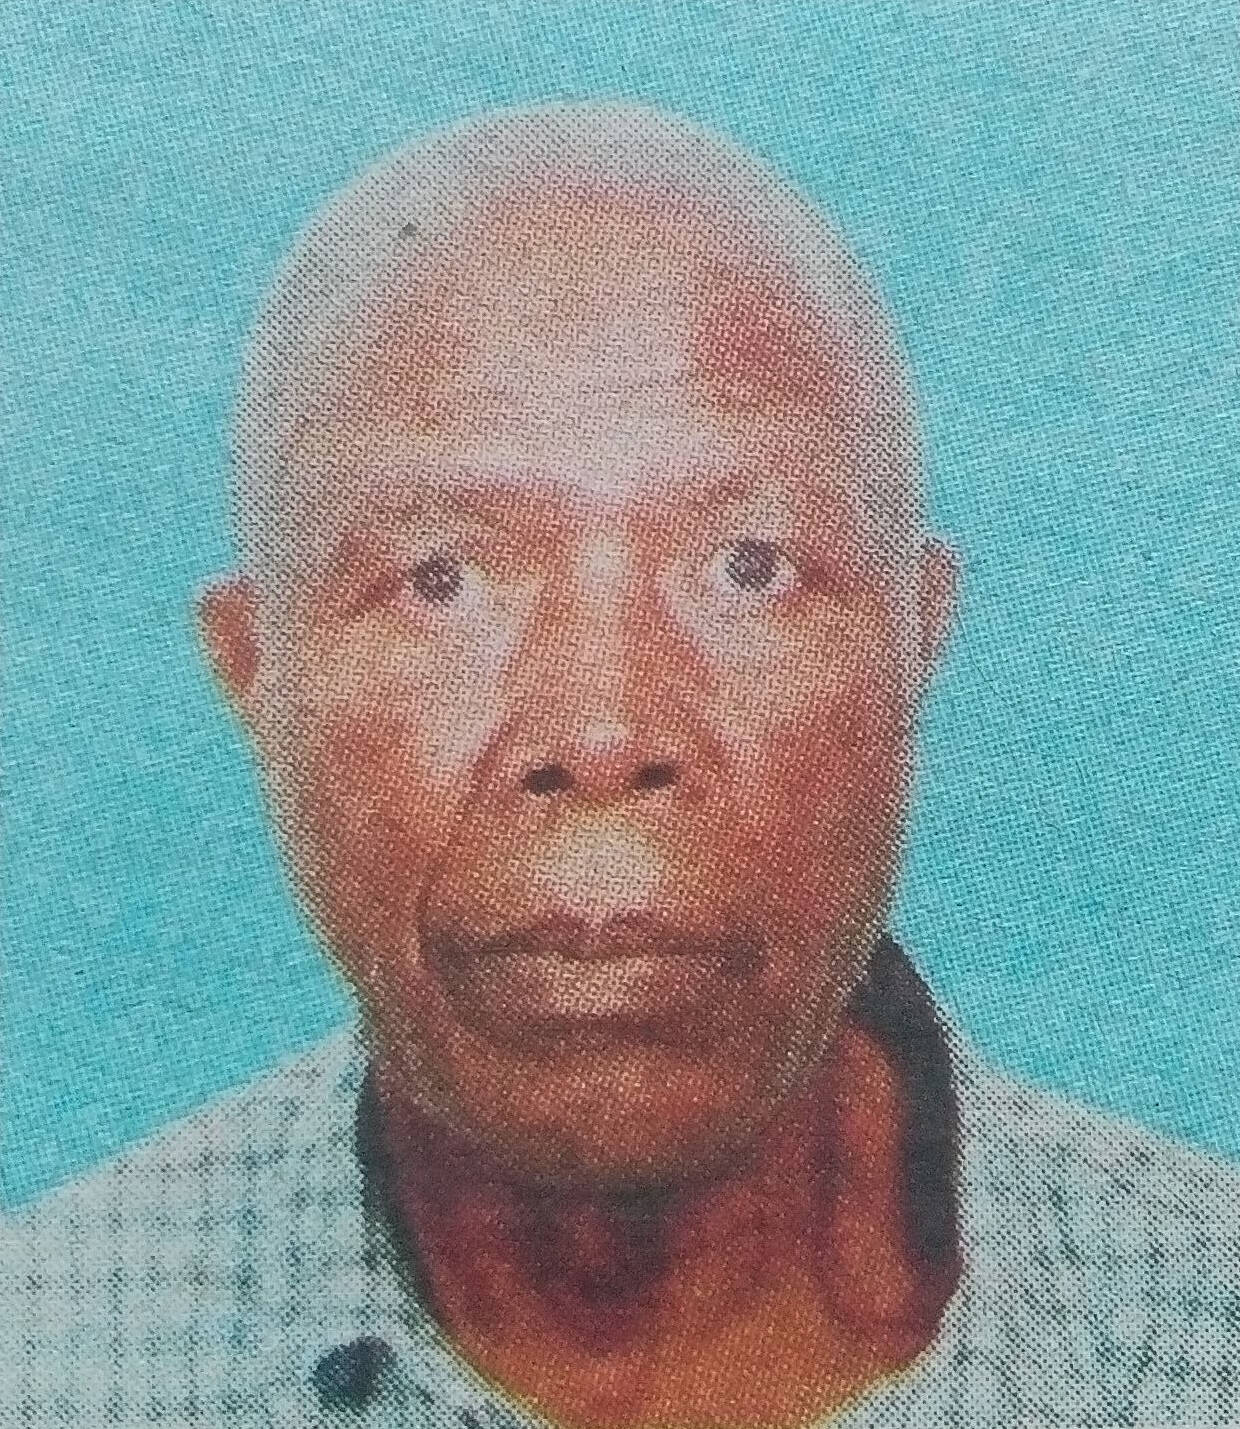 Obituary Image of Mwalimu Zablon Anyieni Onchiri